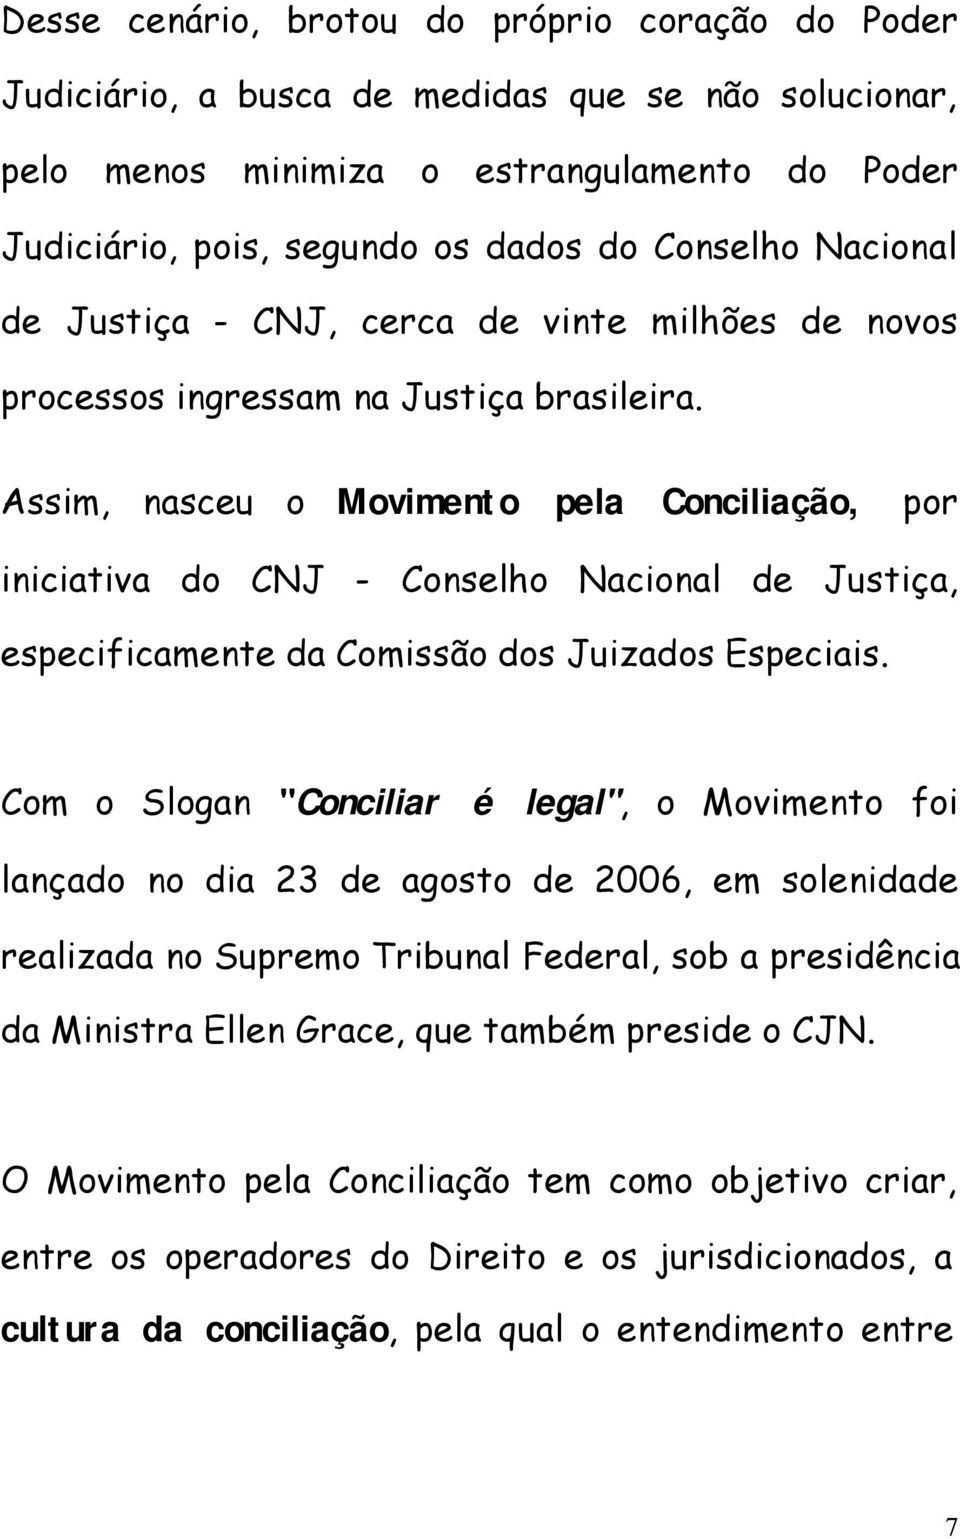 Assim, nasceu o Movimento pela Conciliação, por iniciativa do CNJ - Conselho Nacional de Justiça, especificamente da Comissão dos Juizados Especiais.